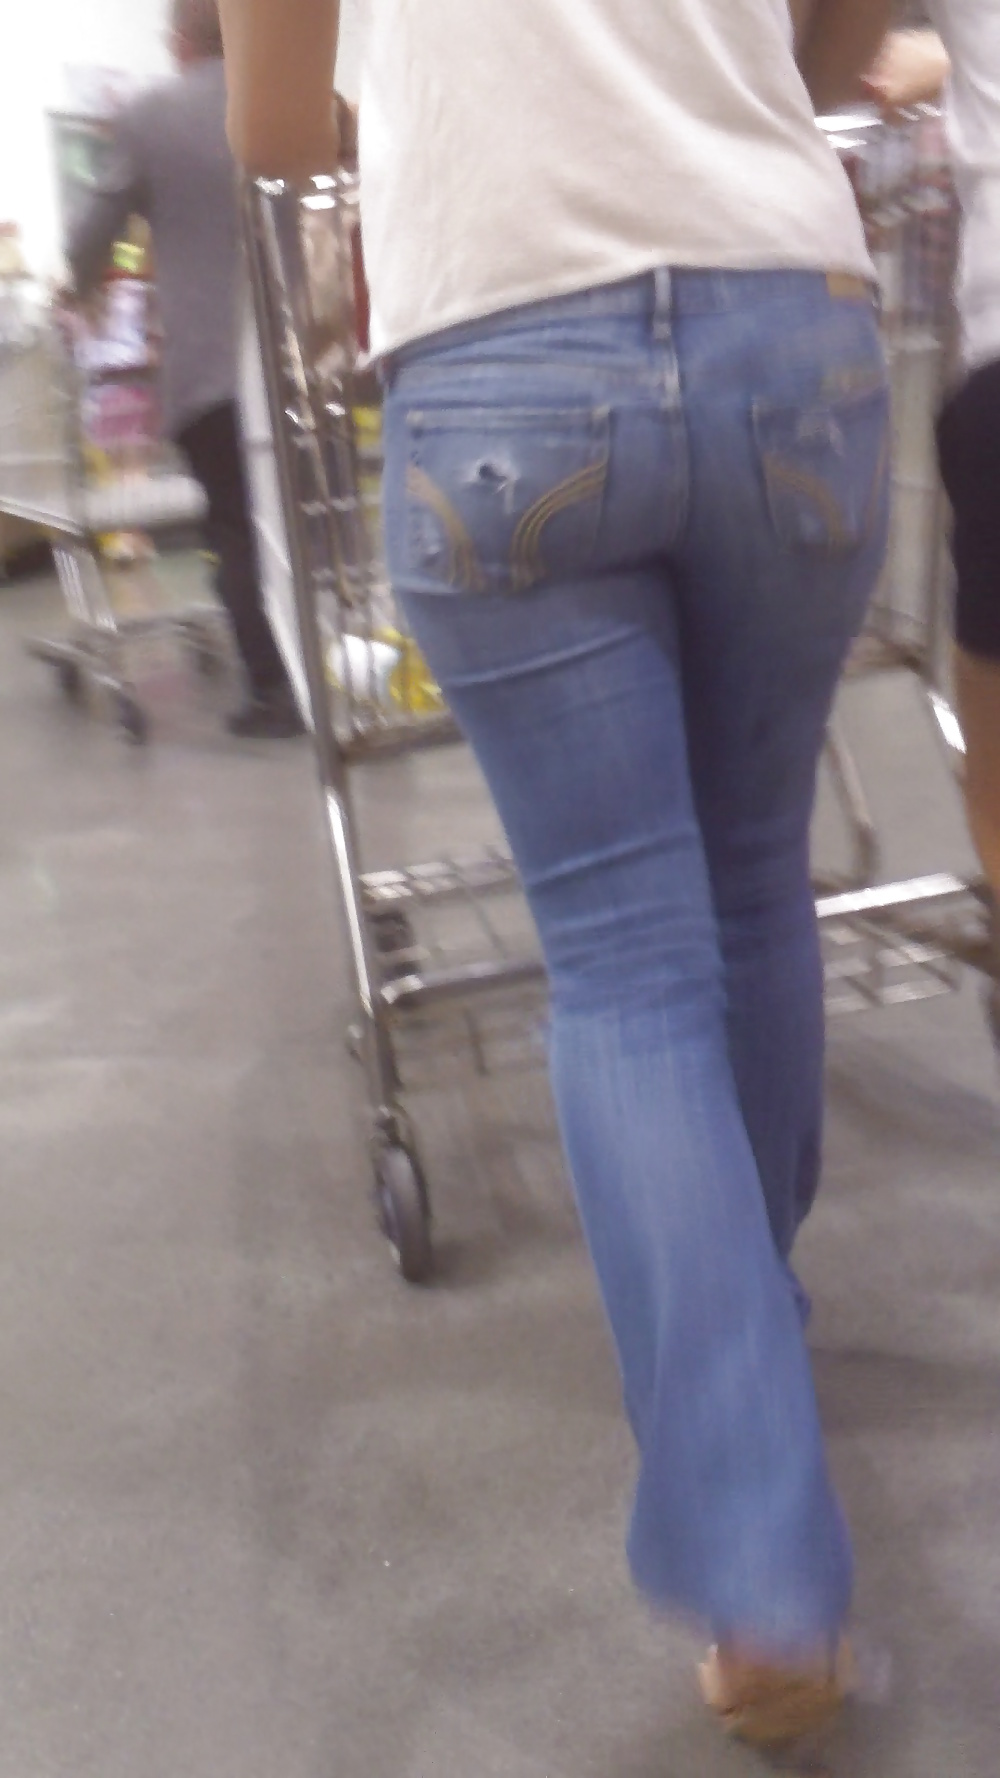 Popular teen girls ass & butt in jeans part 3 #25402573